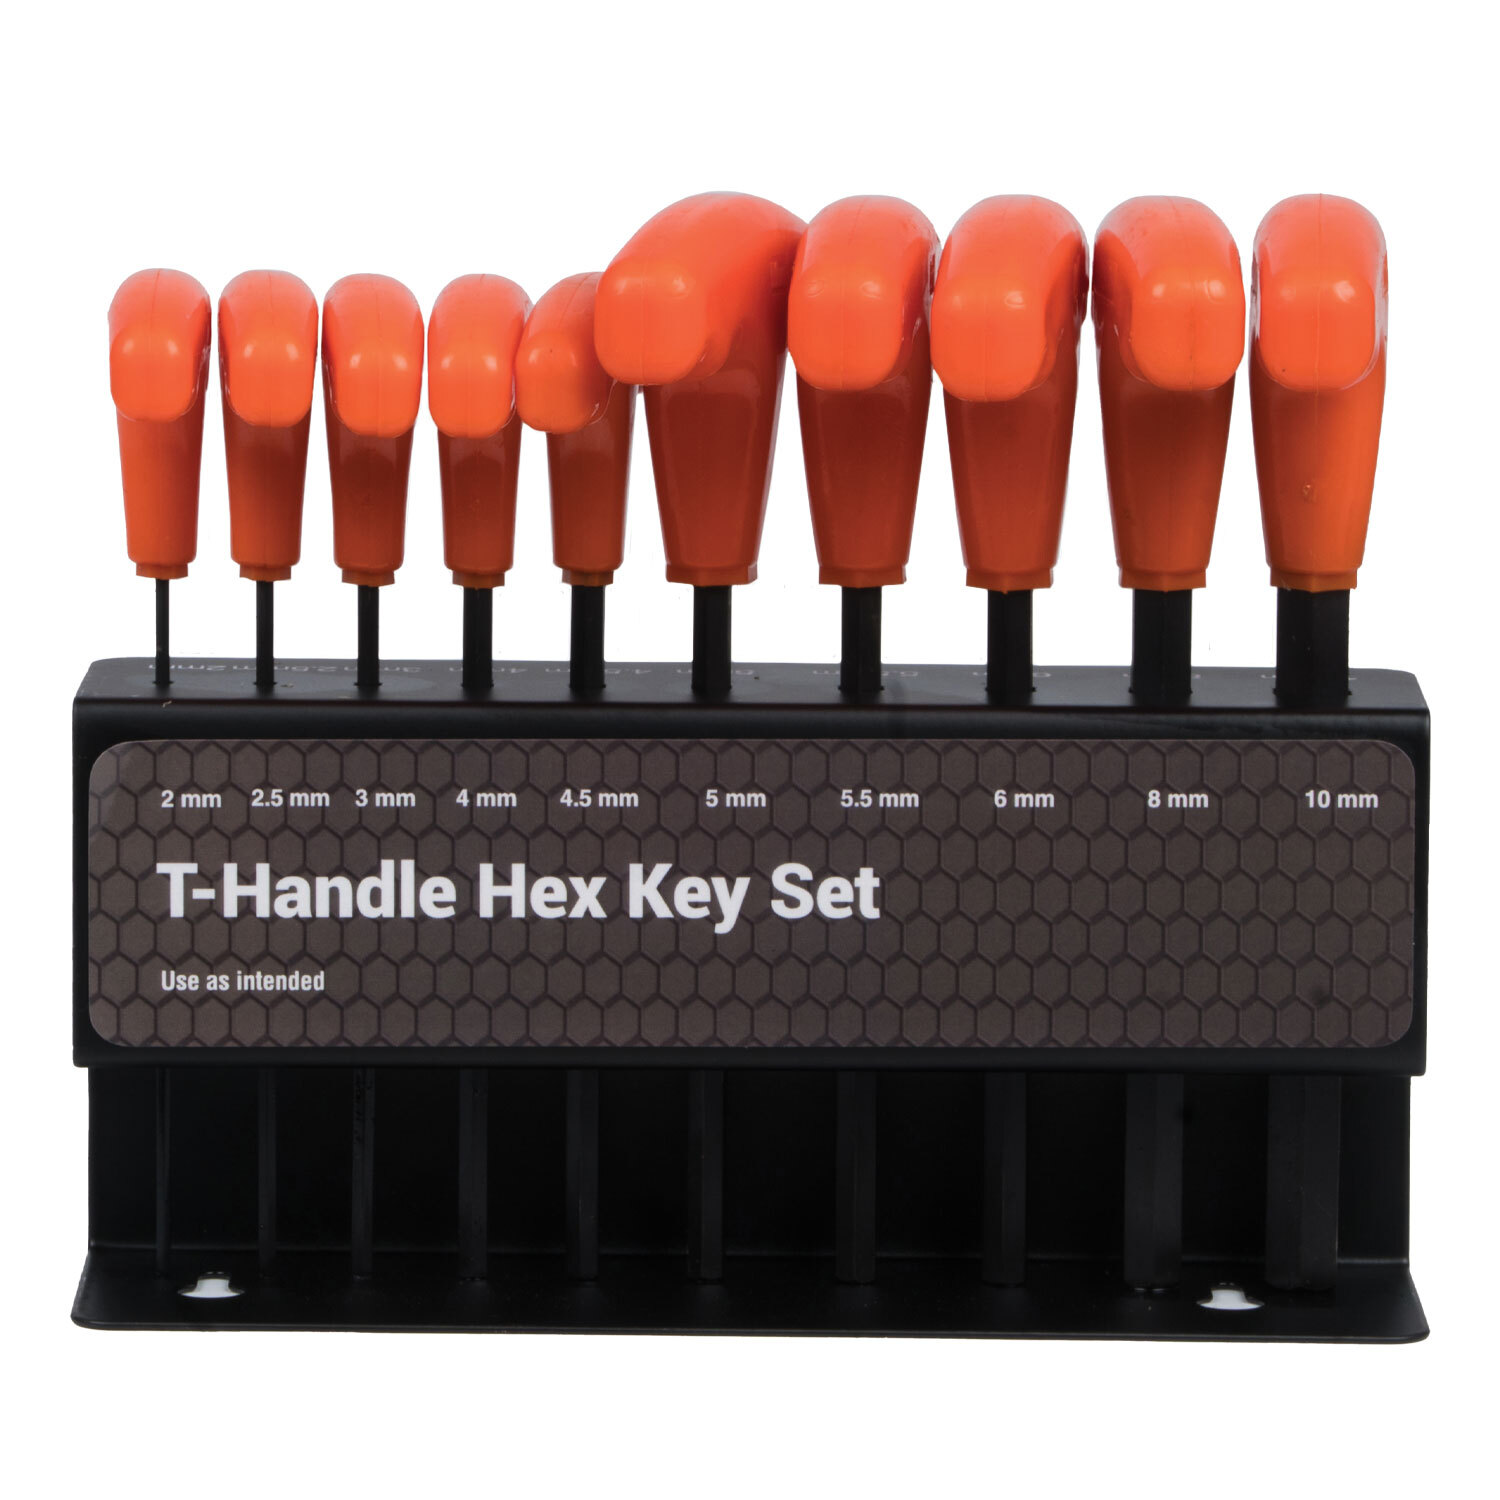 Saber 10 Piece T-Handle Hex Key Set Image 1